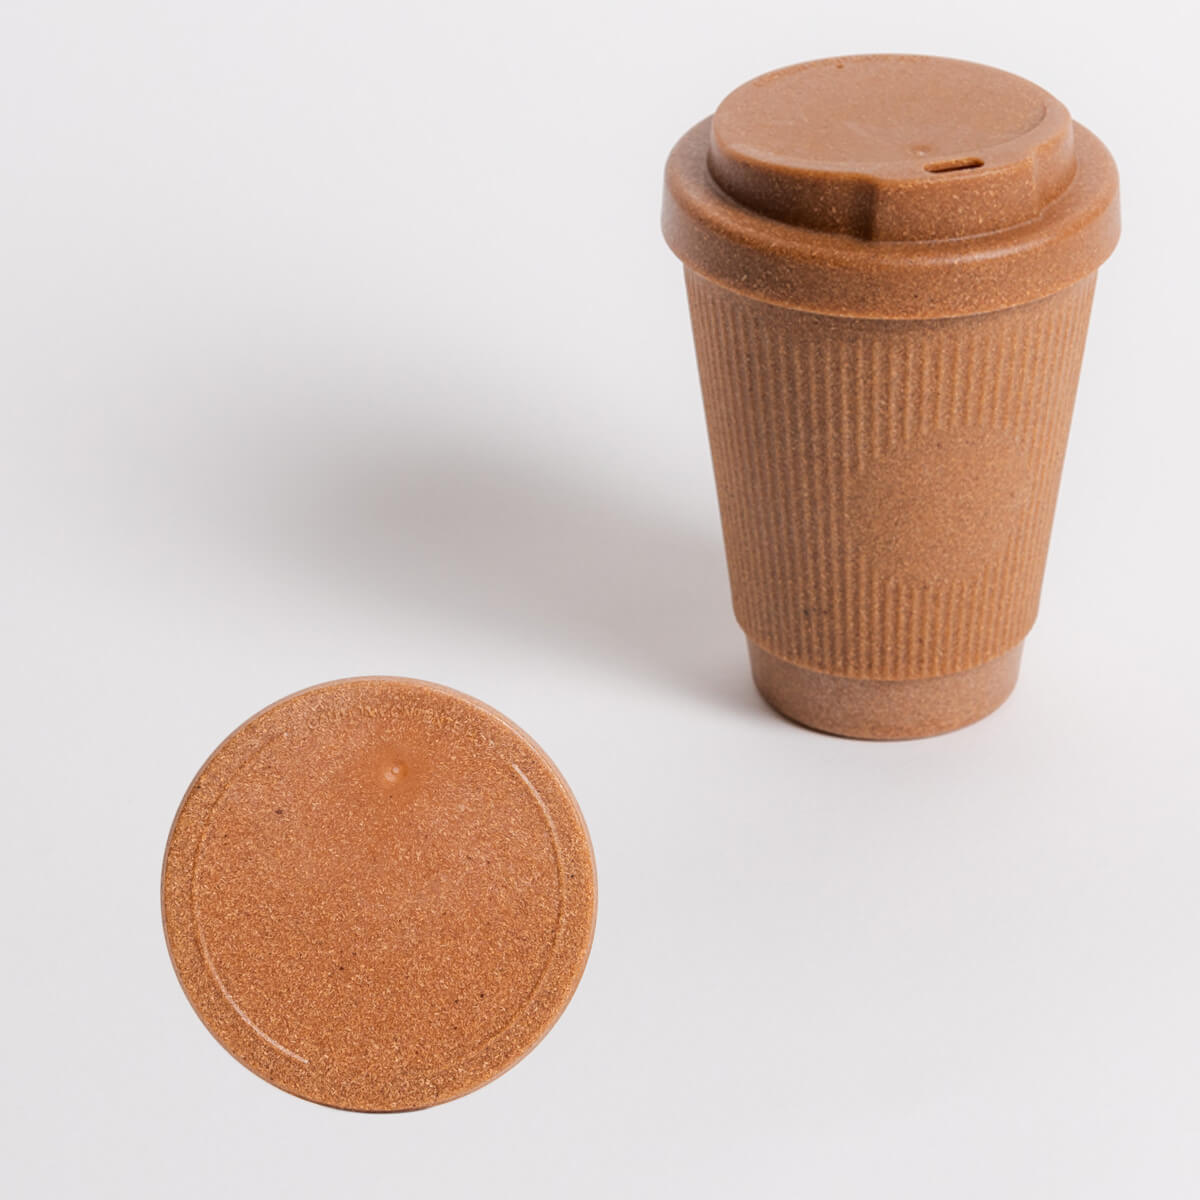 Kaffeeform Weducer Cup Essential und Verschlussdeckel in Nutmeg